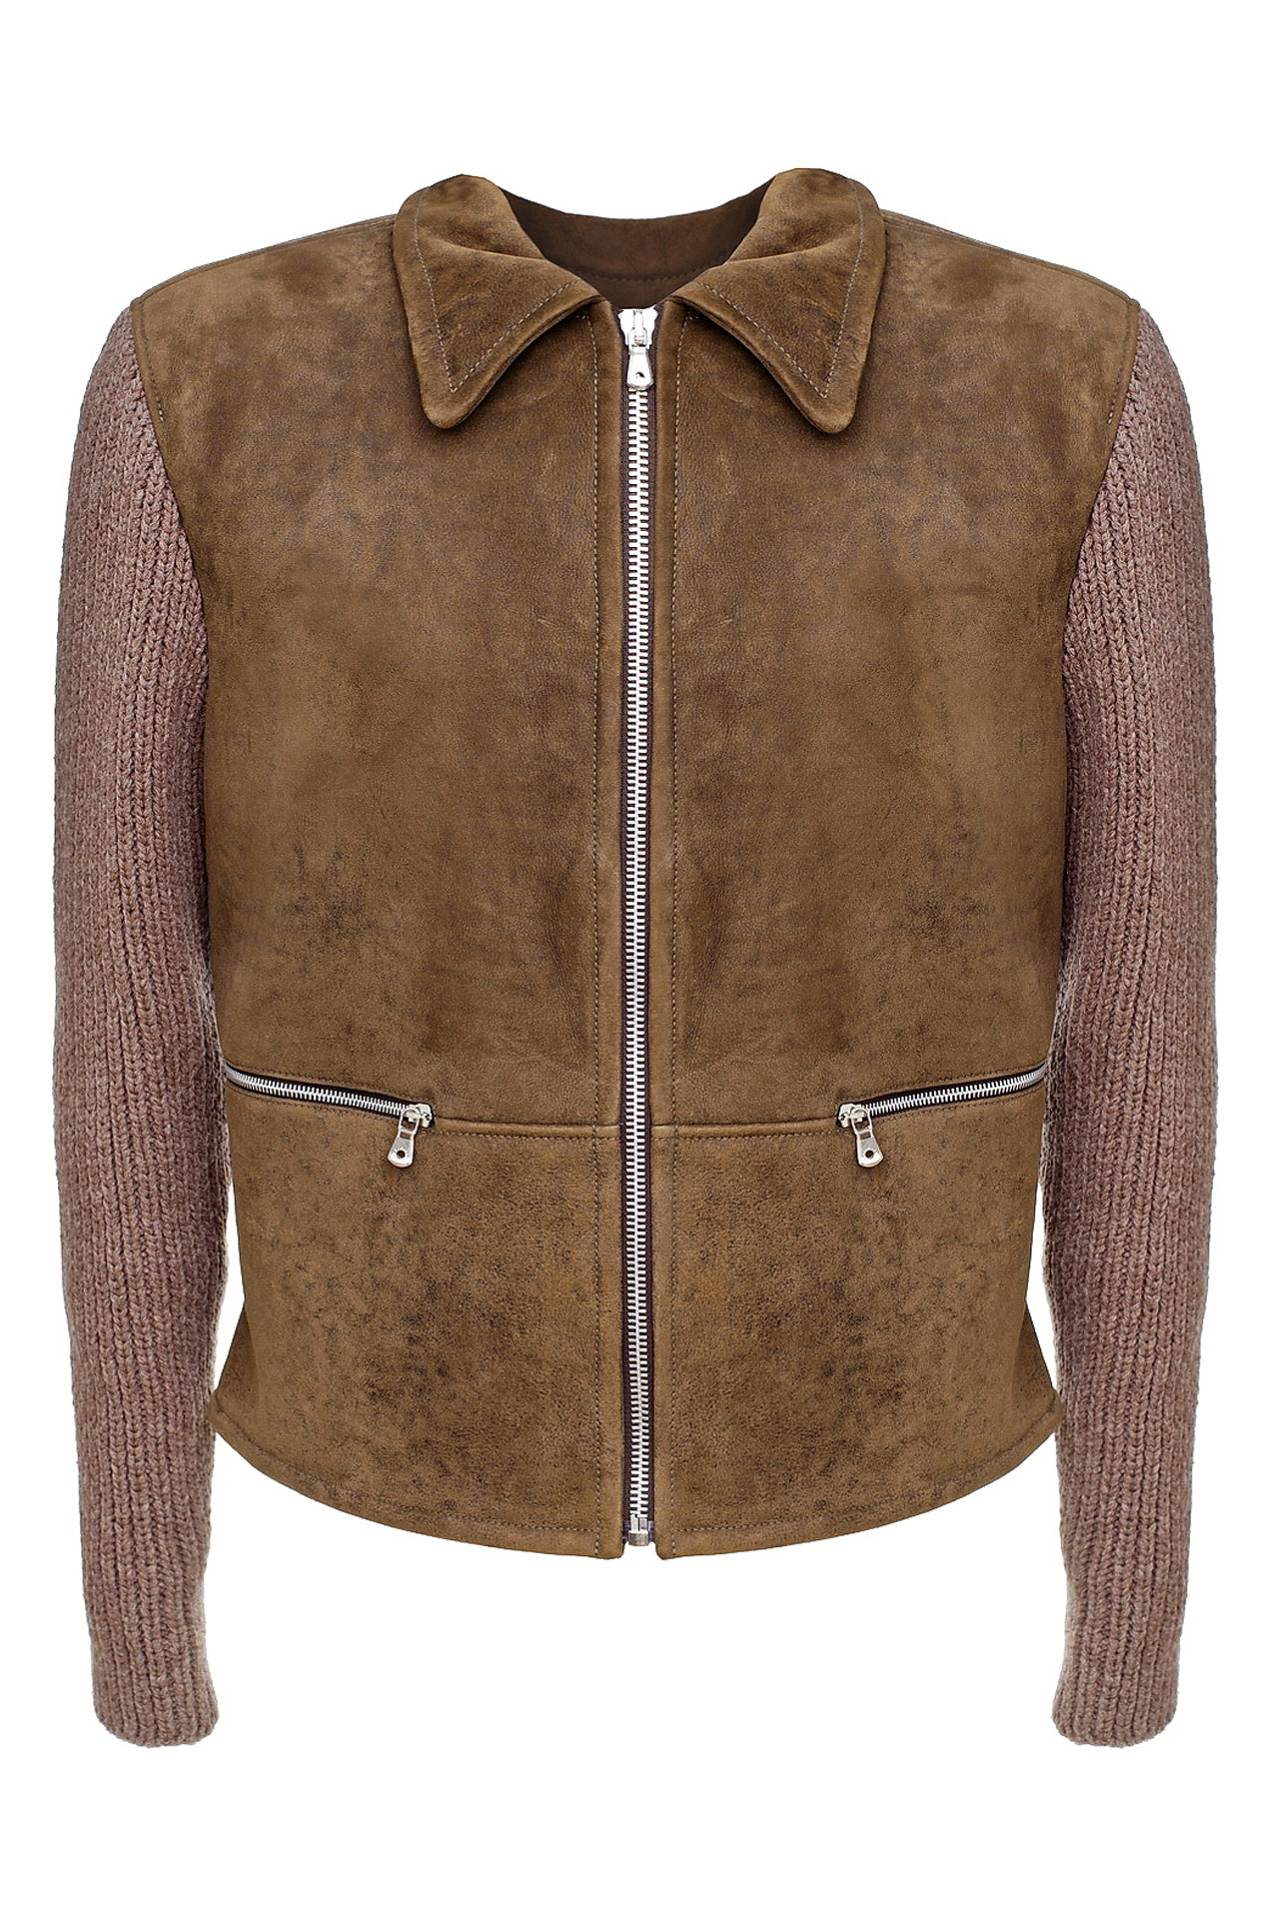 Одежда мужская Куртка DOLCE & GABBANA (G9Y71LFUPKQ/1500). Купить за 63750 руб.